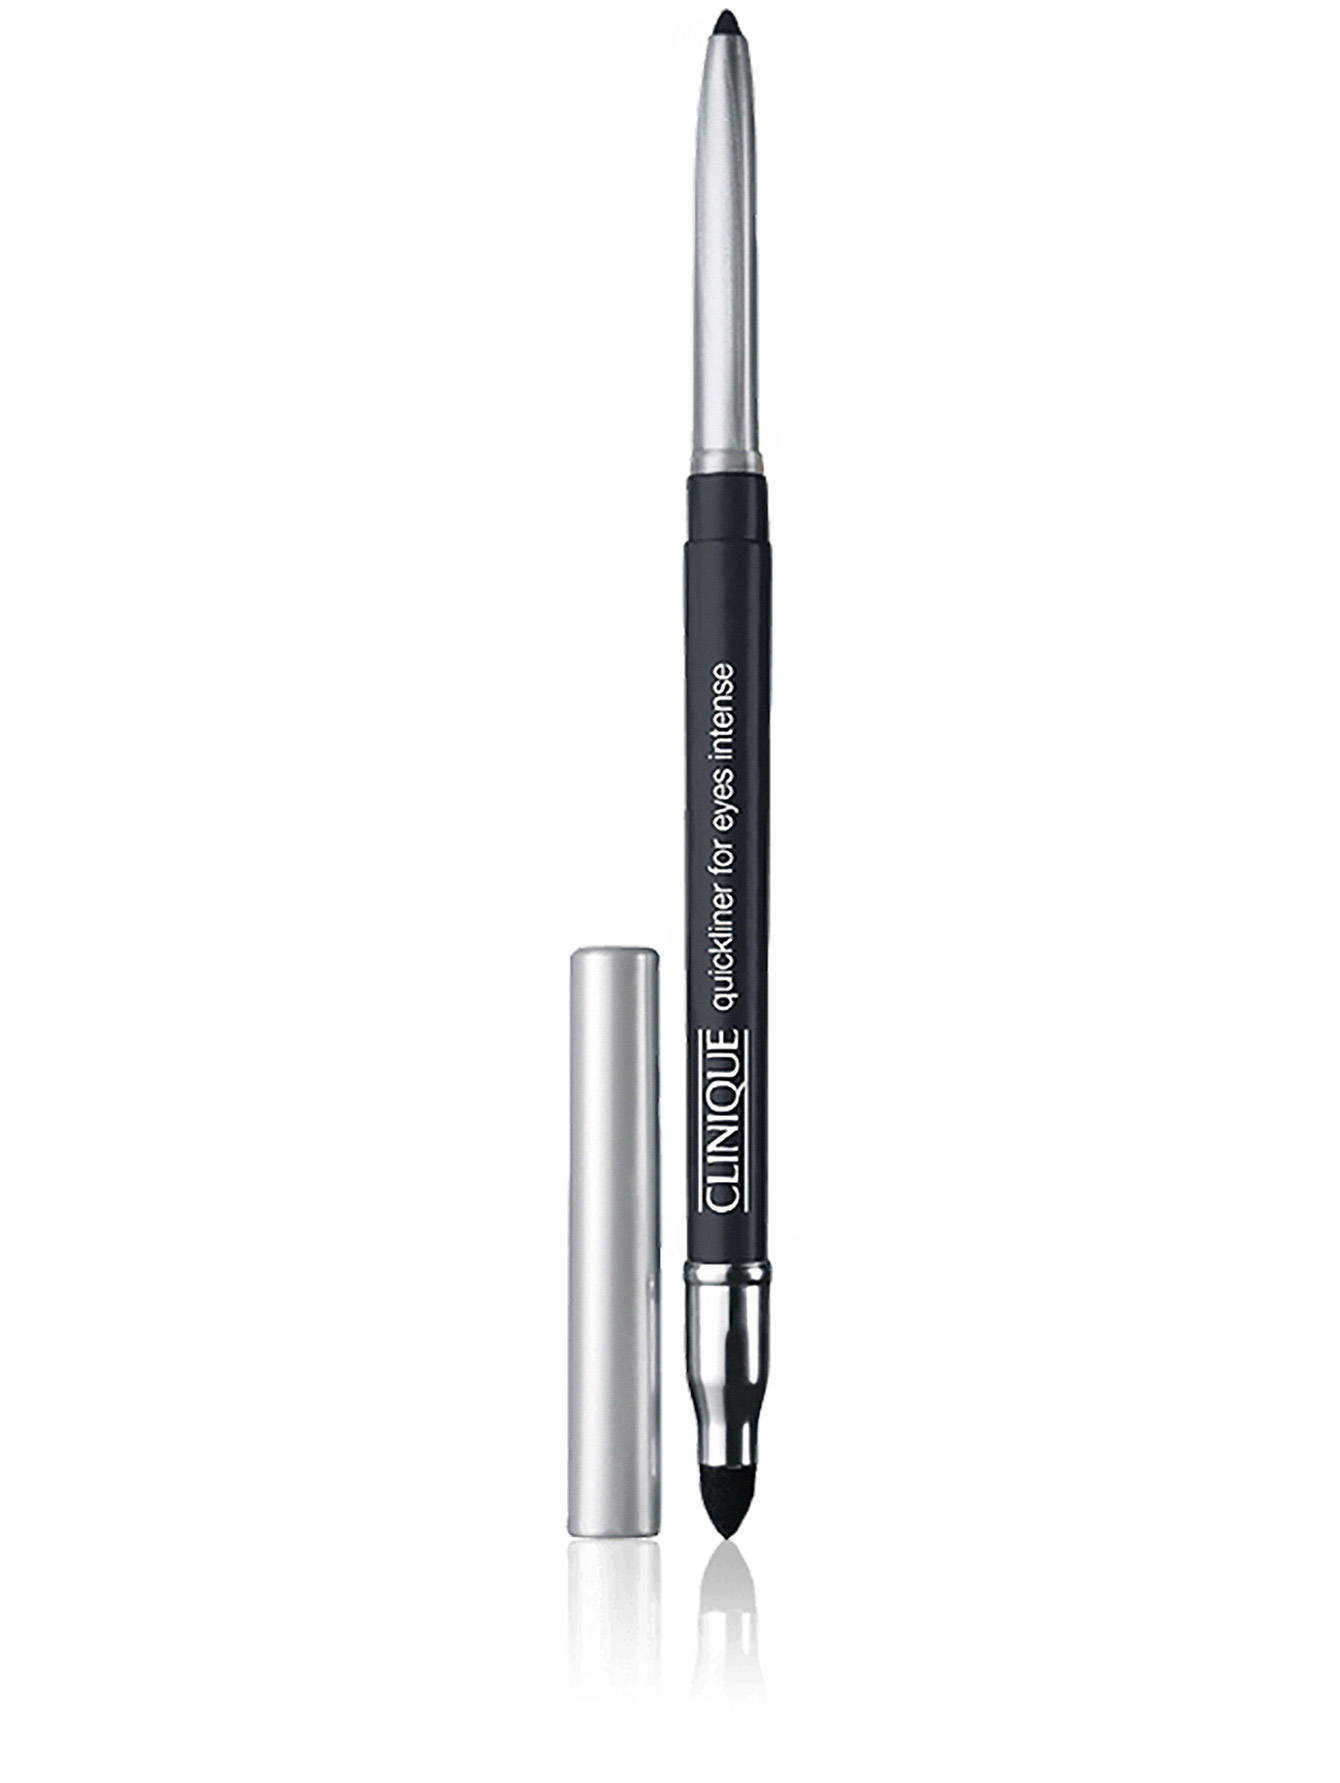  Автоматический карандаш для глаз - Intense Carcoal, Quickliner - Общий вид